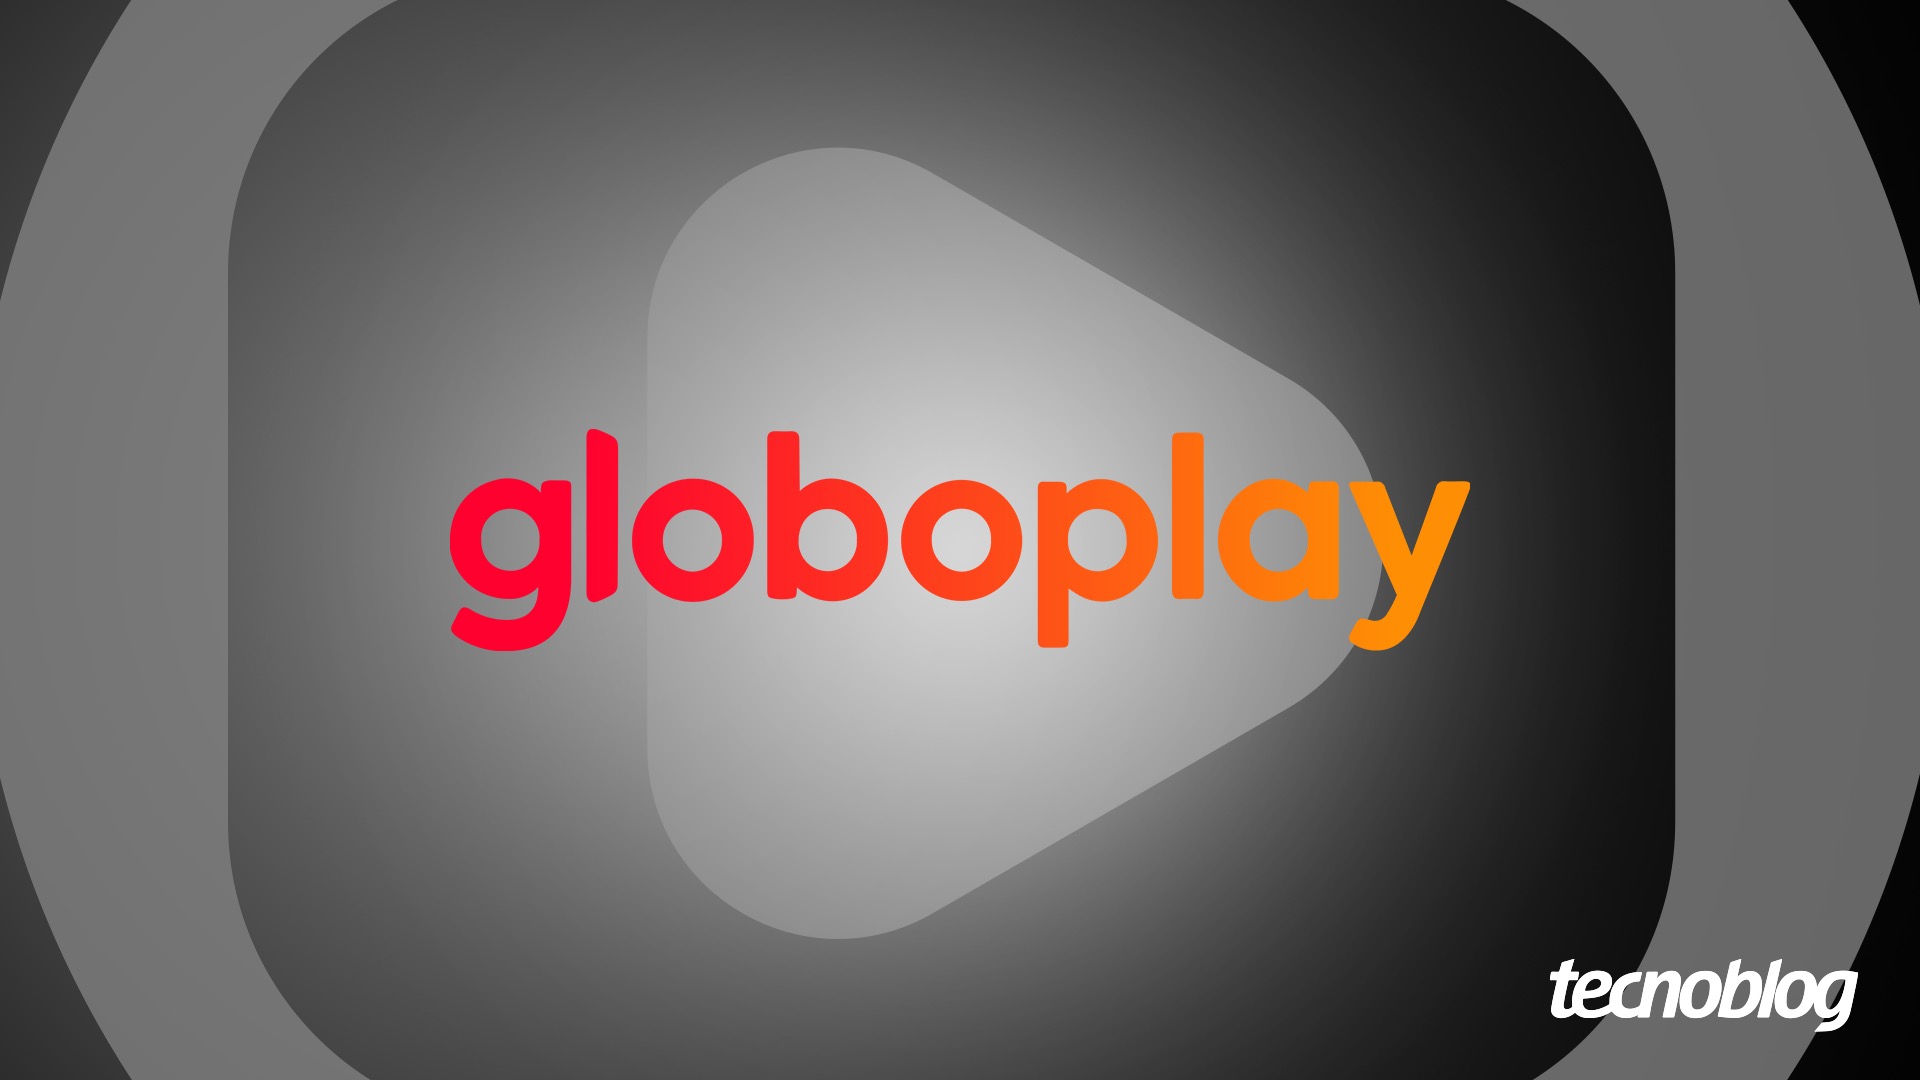 Globo Play é o nome do serviço de streaming da maior emissora de